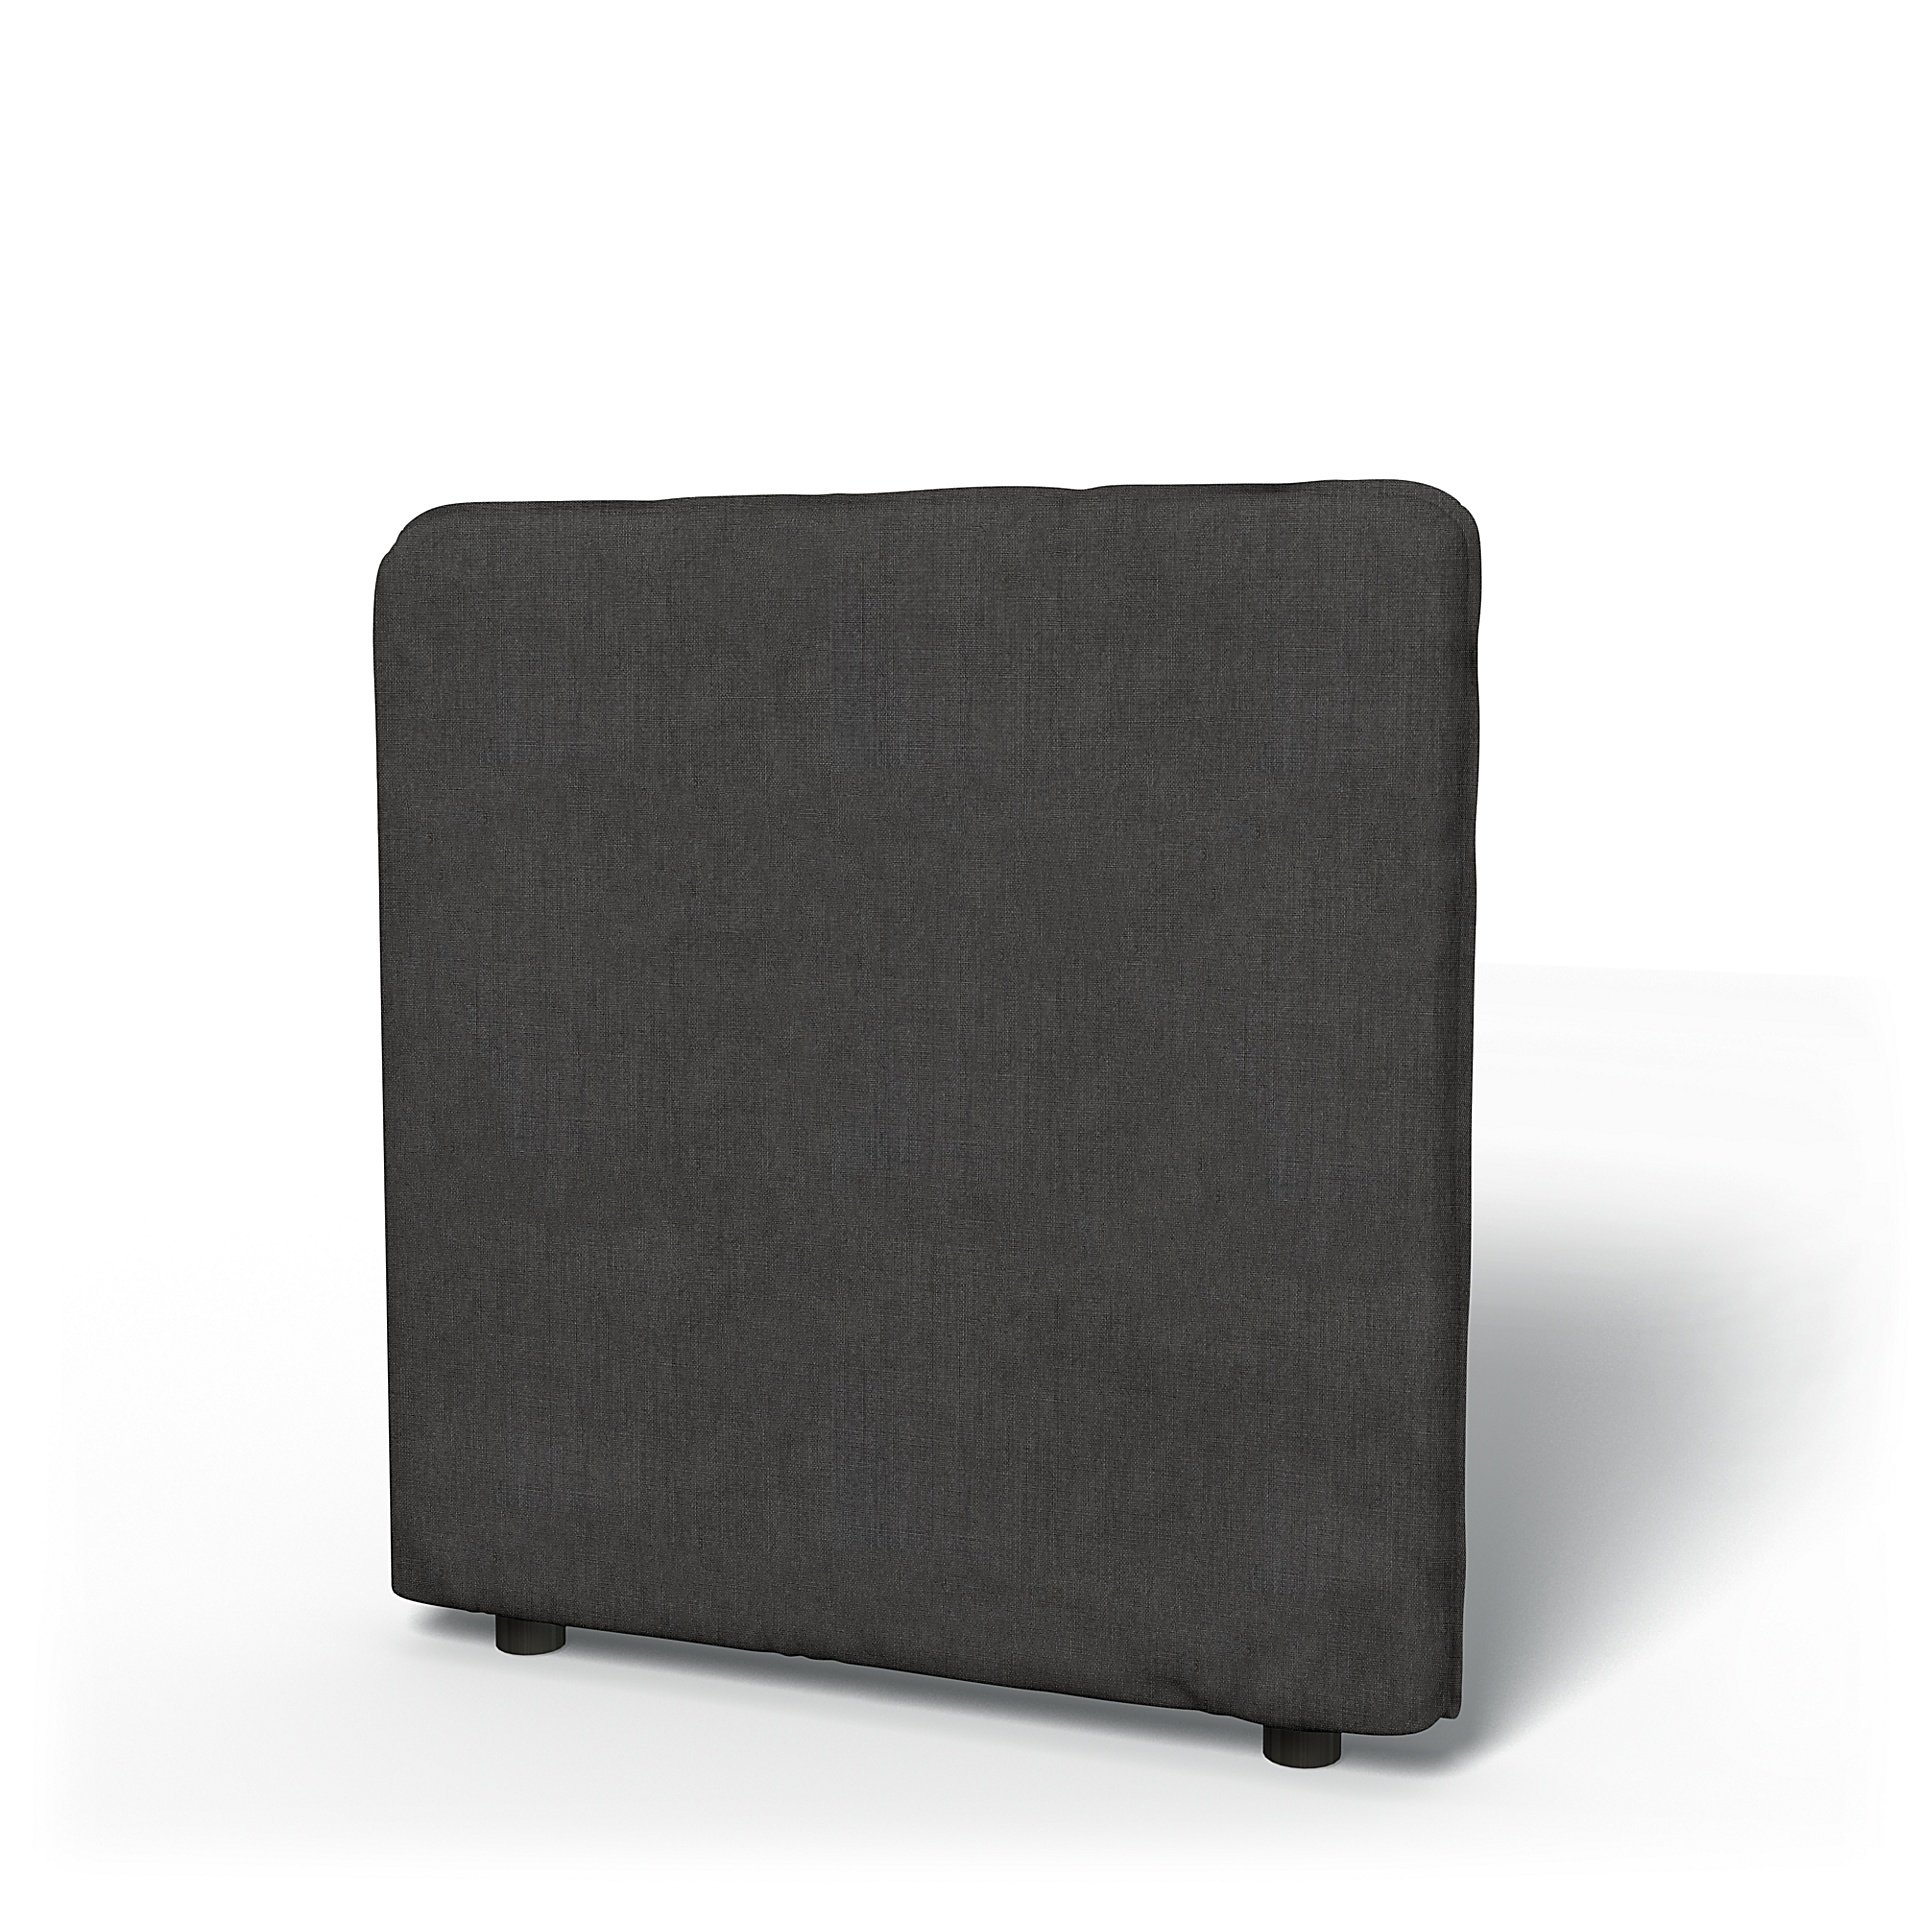 IKEA - Vallentuna Low Backrest Cover 80x80cm 32x32in, Espresso, Linen - Bemz